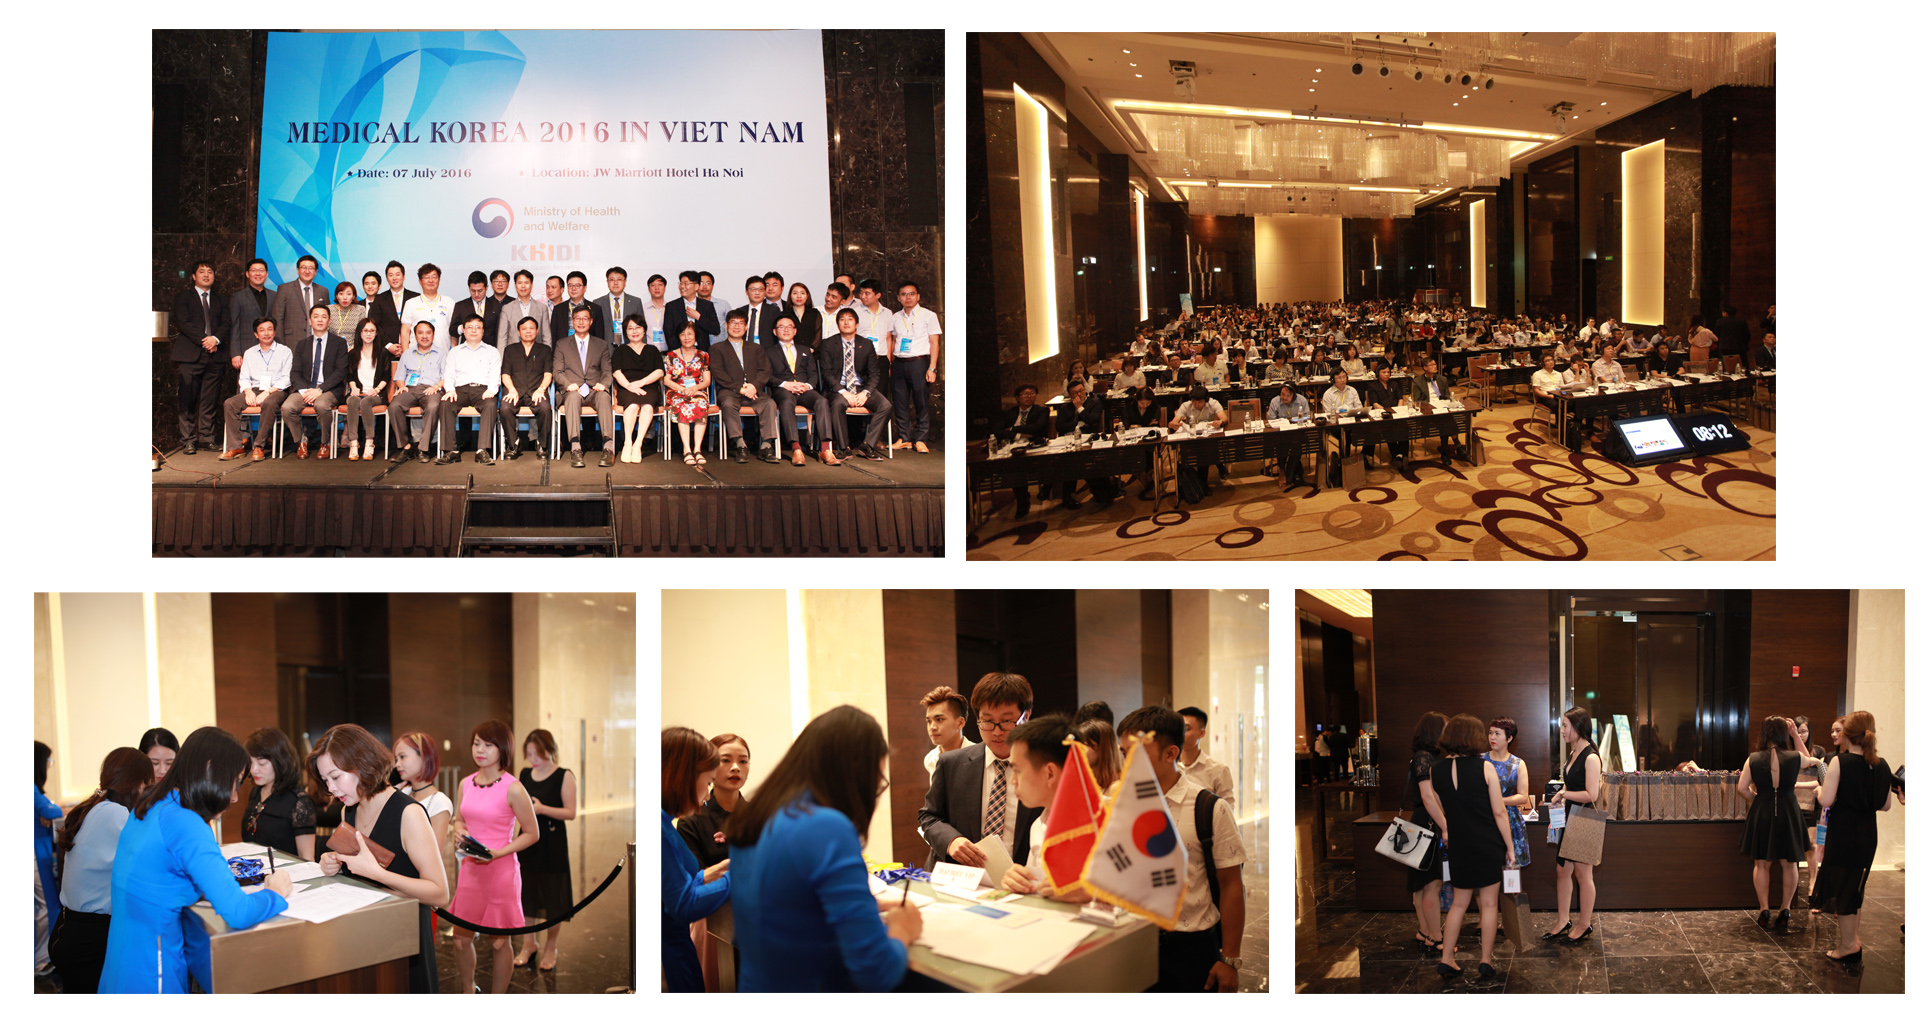 Hội nghị y tế Hàn Việt 2016